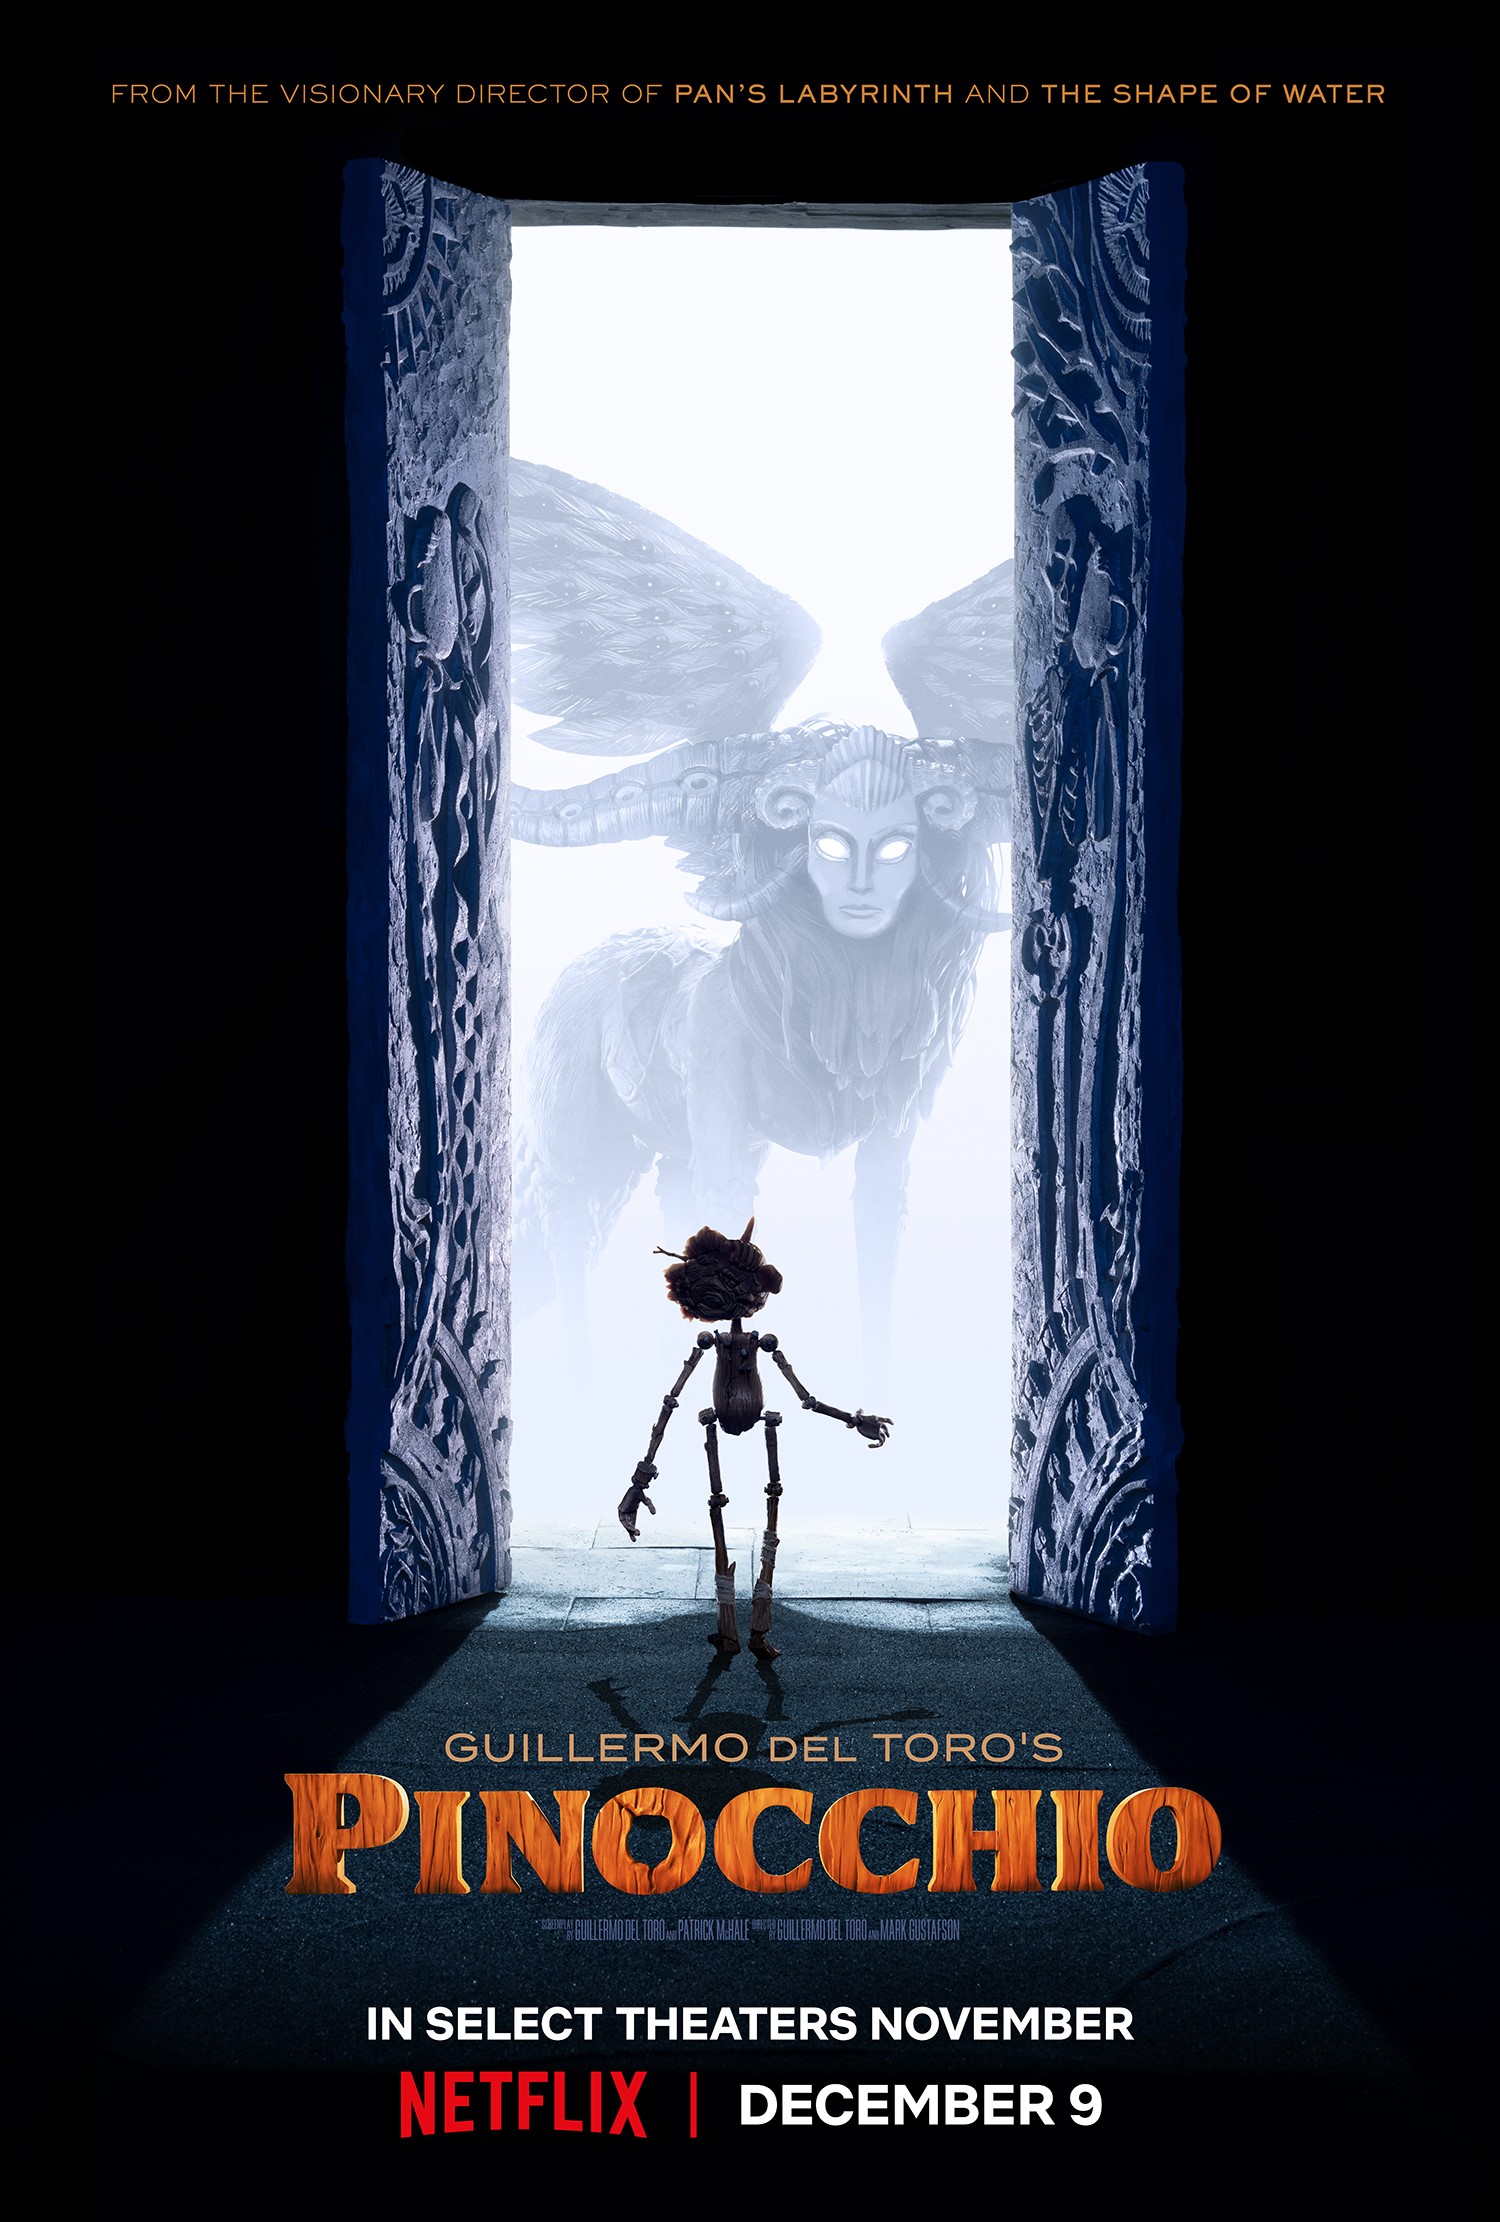 Film poster for Guillermo del Toro